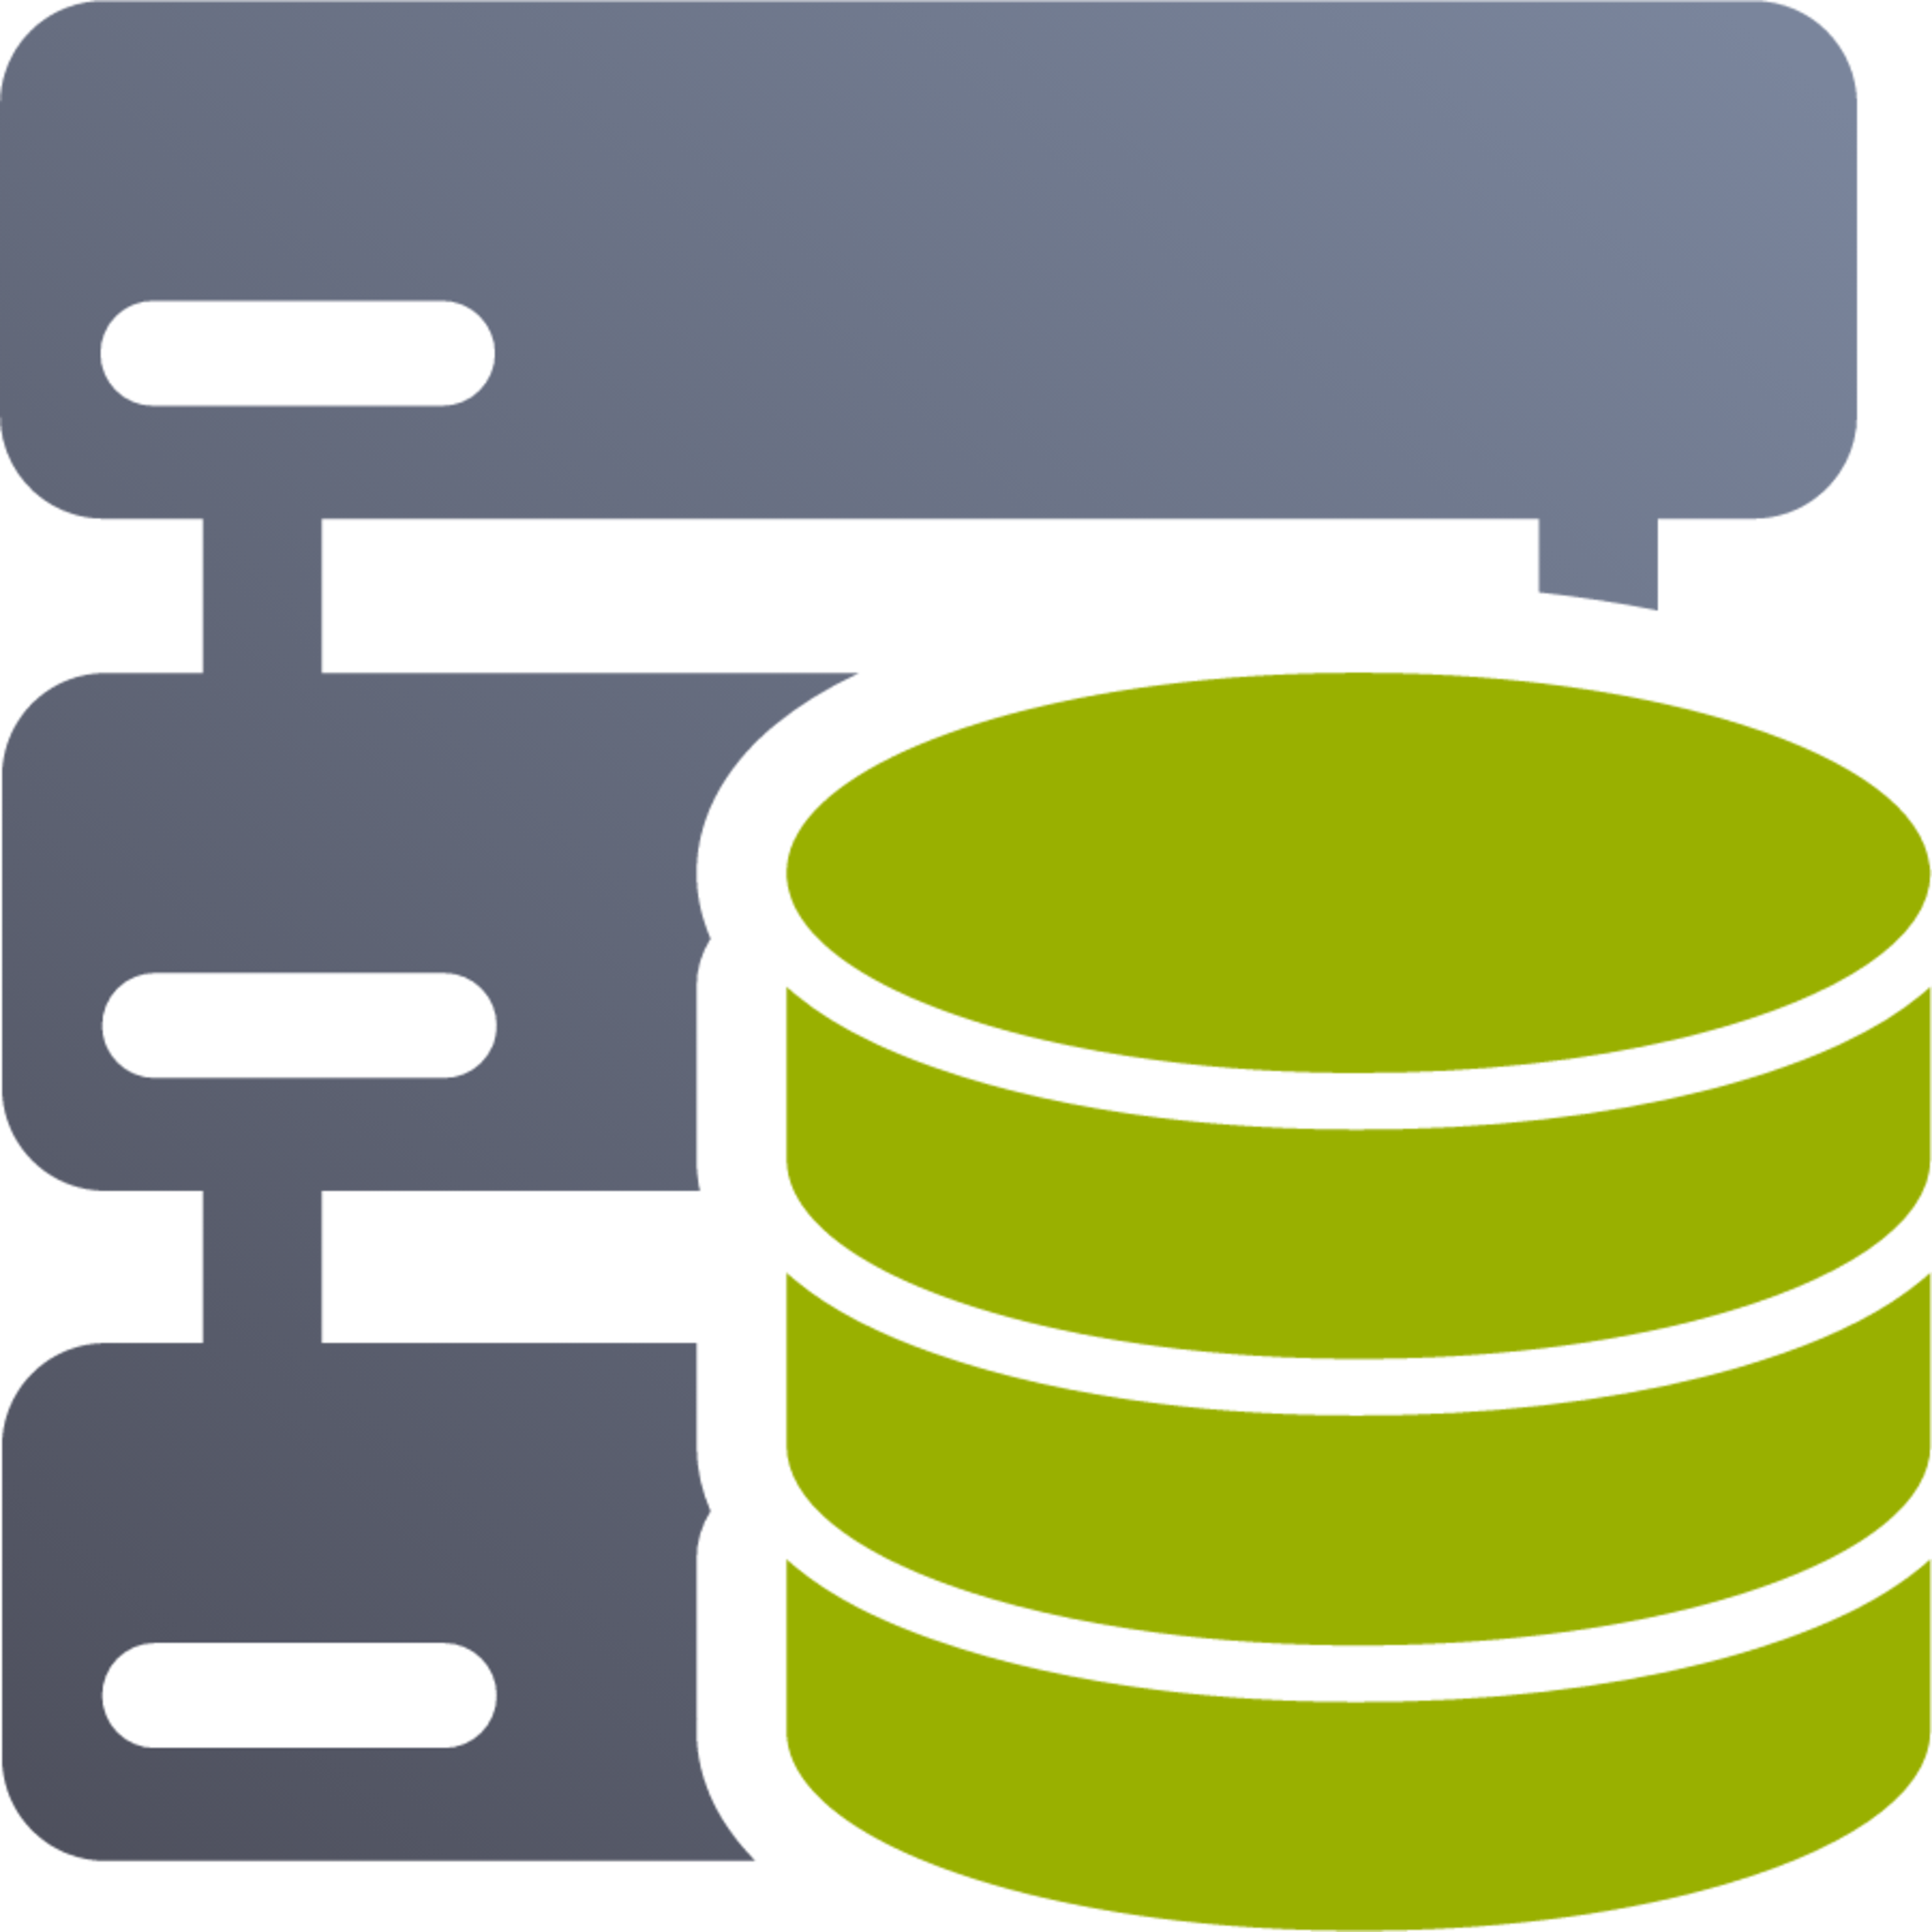 server database icon